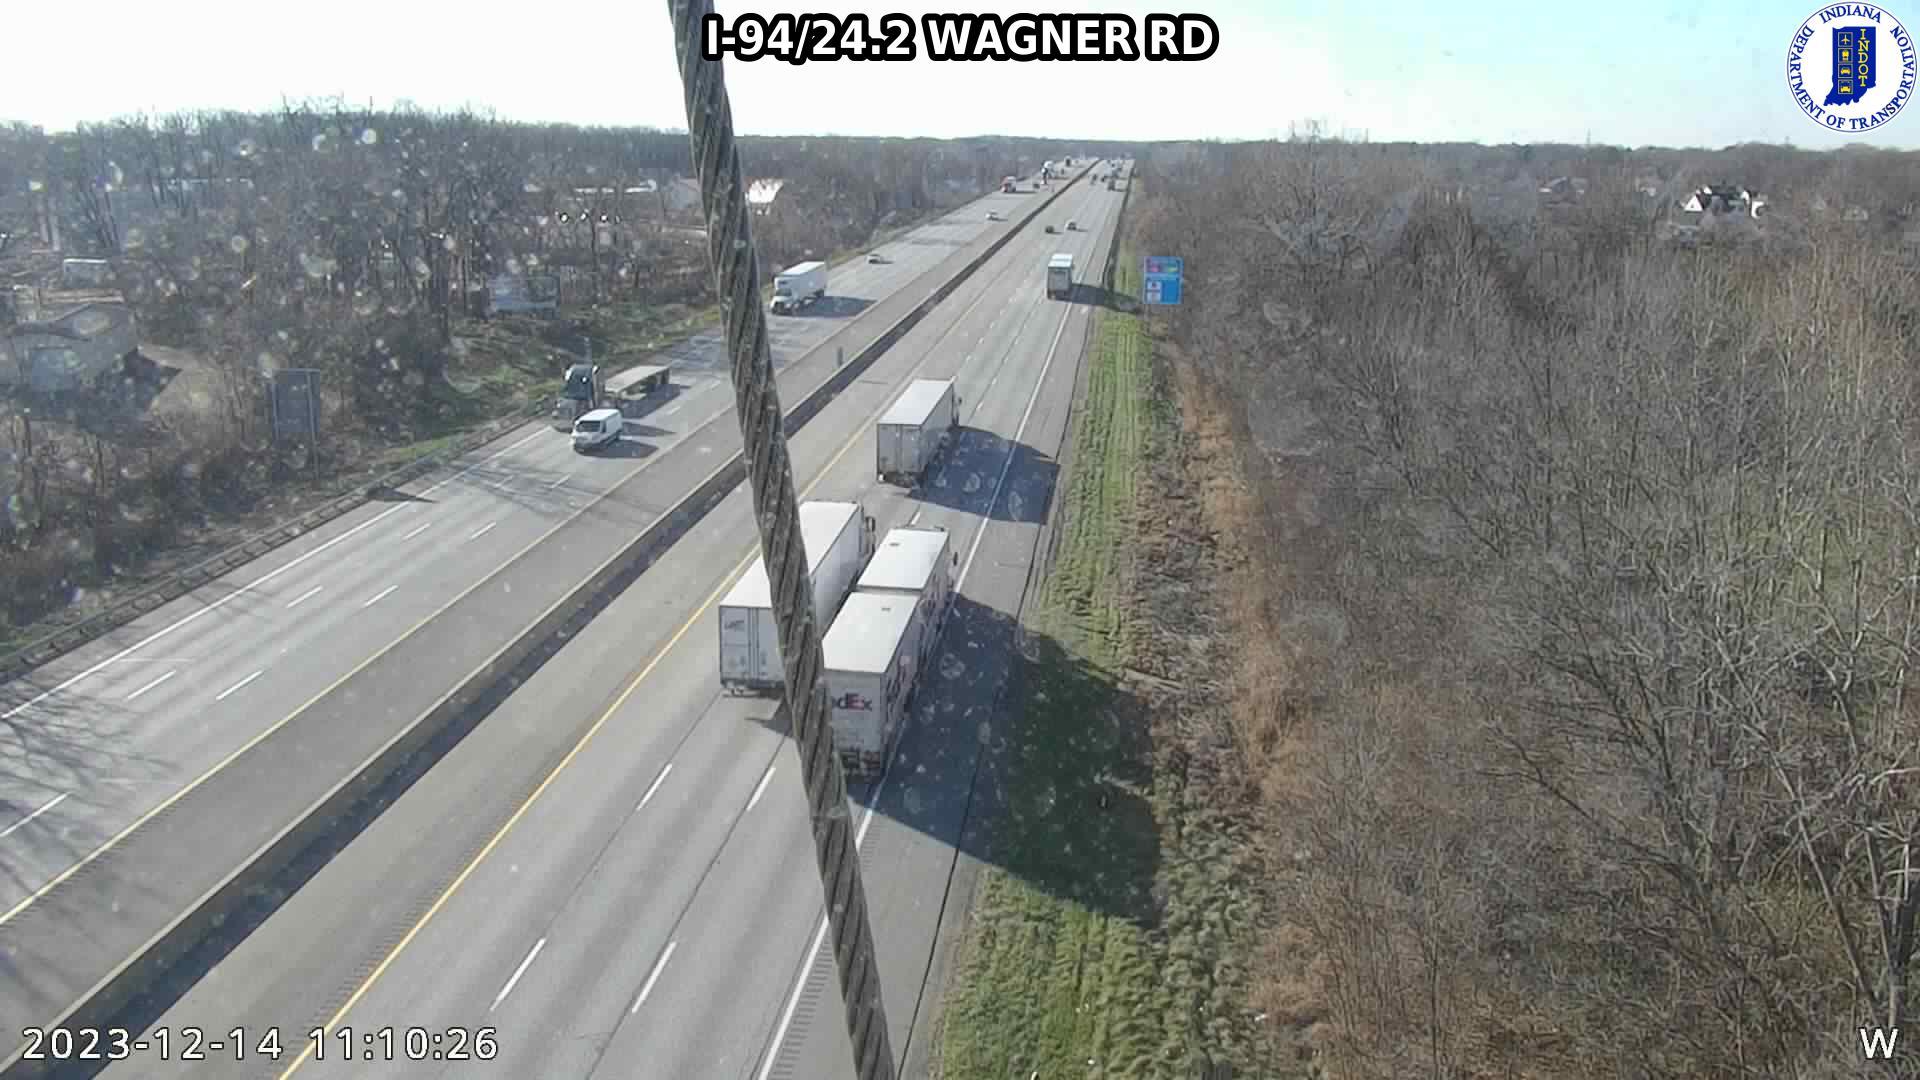 Traffic Cam Porter: I-94: I-94/24.2 WAGNER RD : I-94/24.2 WAGNER RD